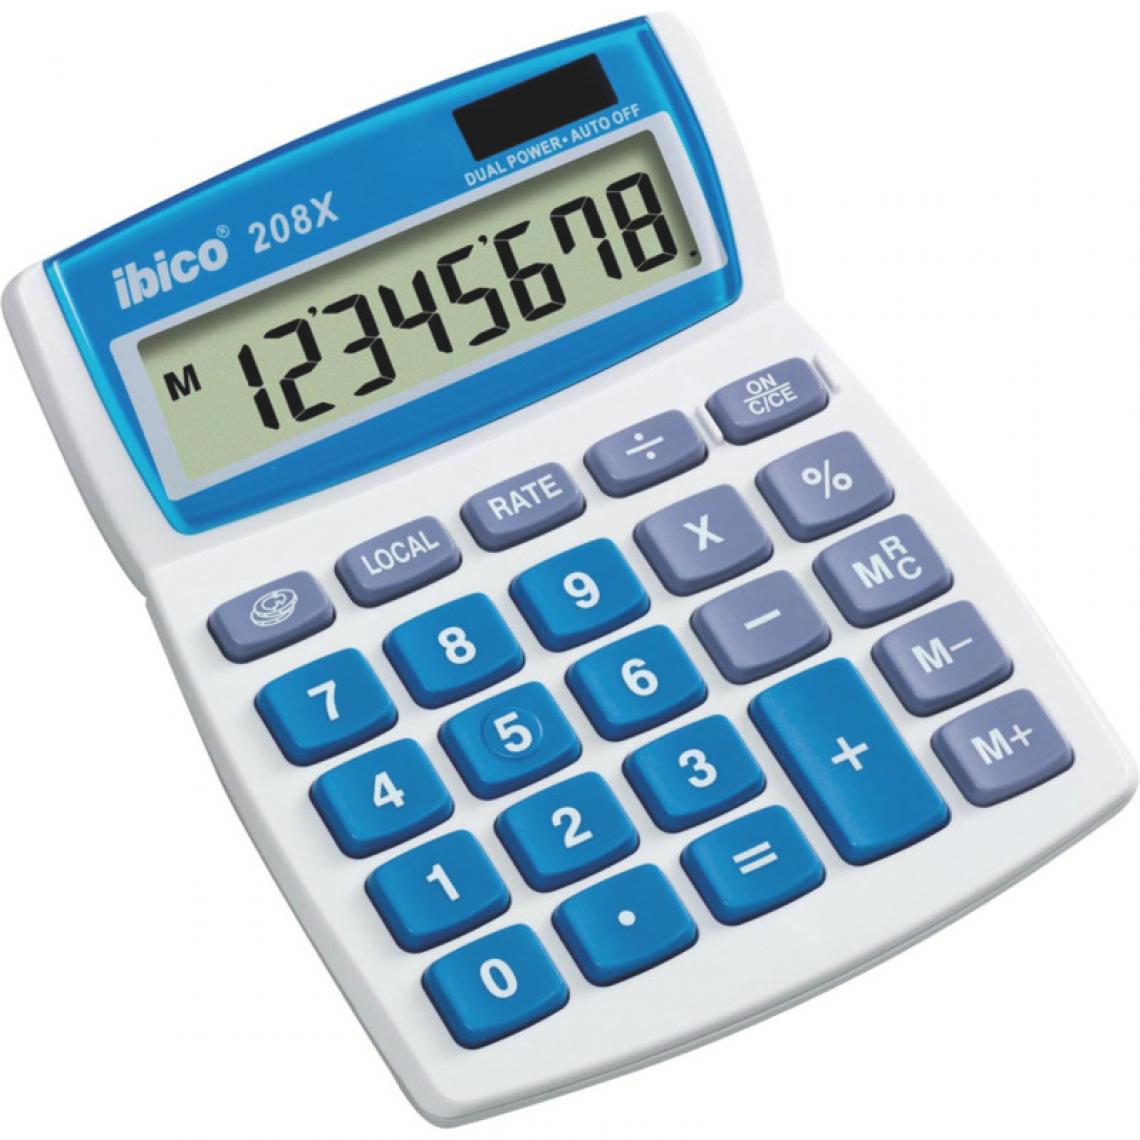 Ibico - ibico Calculatrice de bureau 208X, écran LCD à 8 chiffres () - Accessoires Bureau